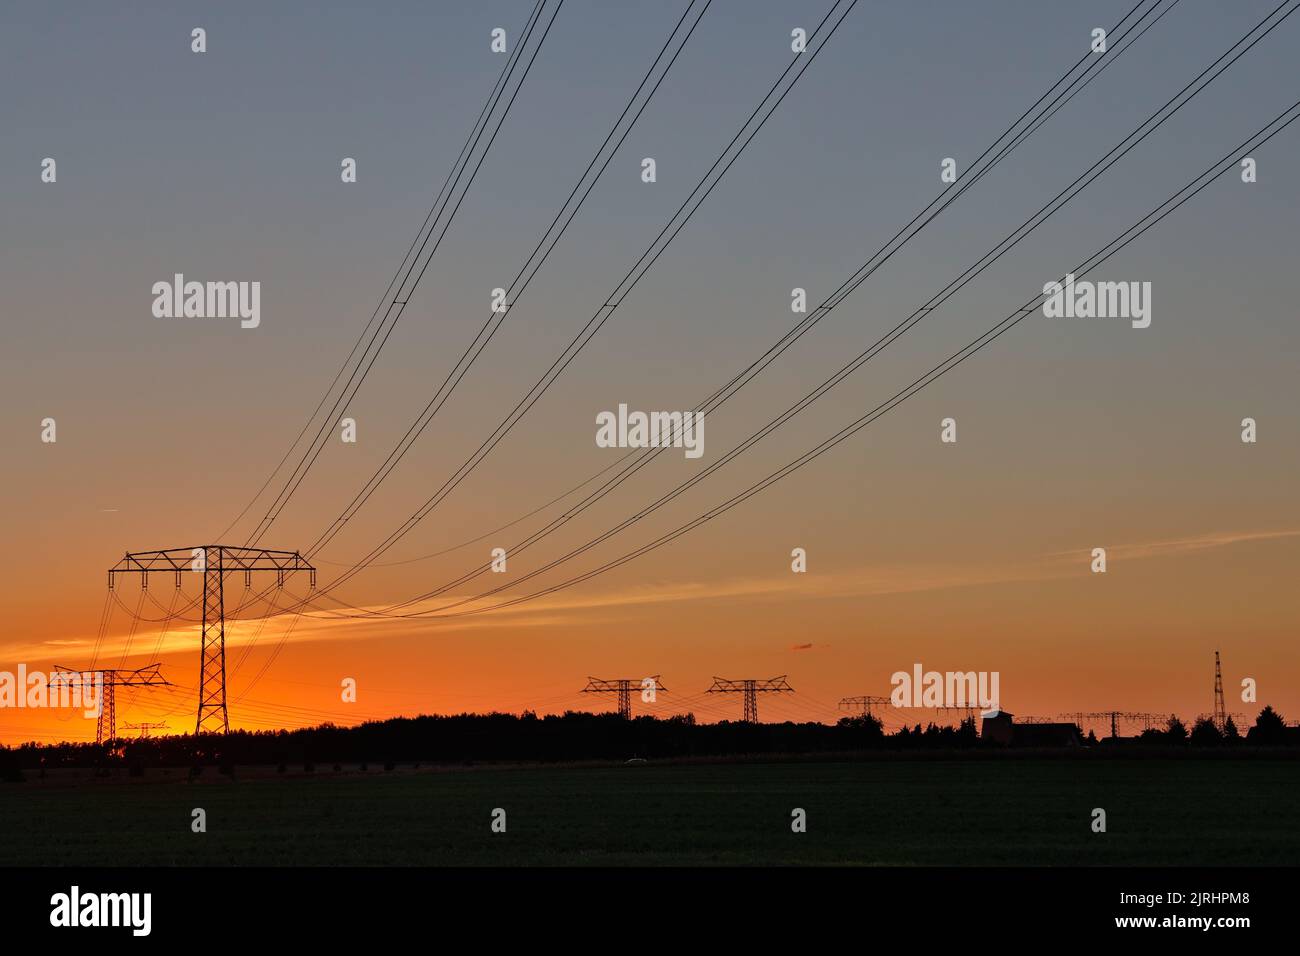 Freileitungstrasse im Sonnenuntergang Übertragung Energie Foto Stock